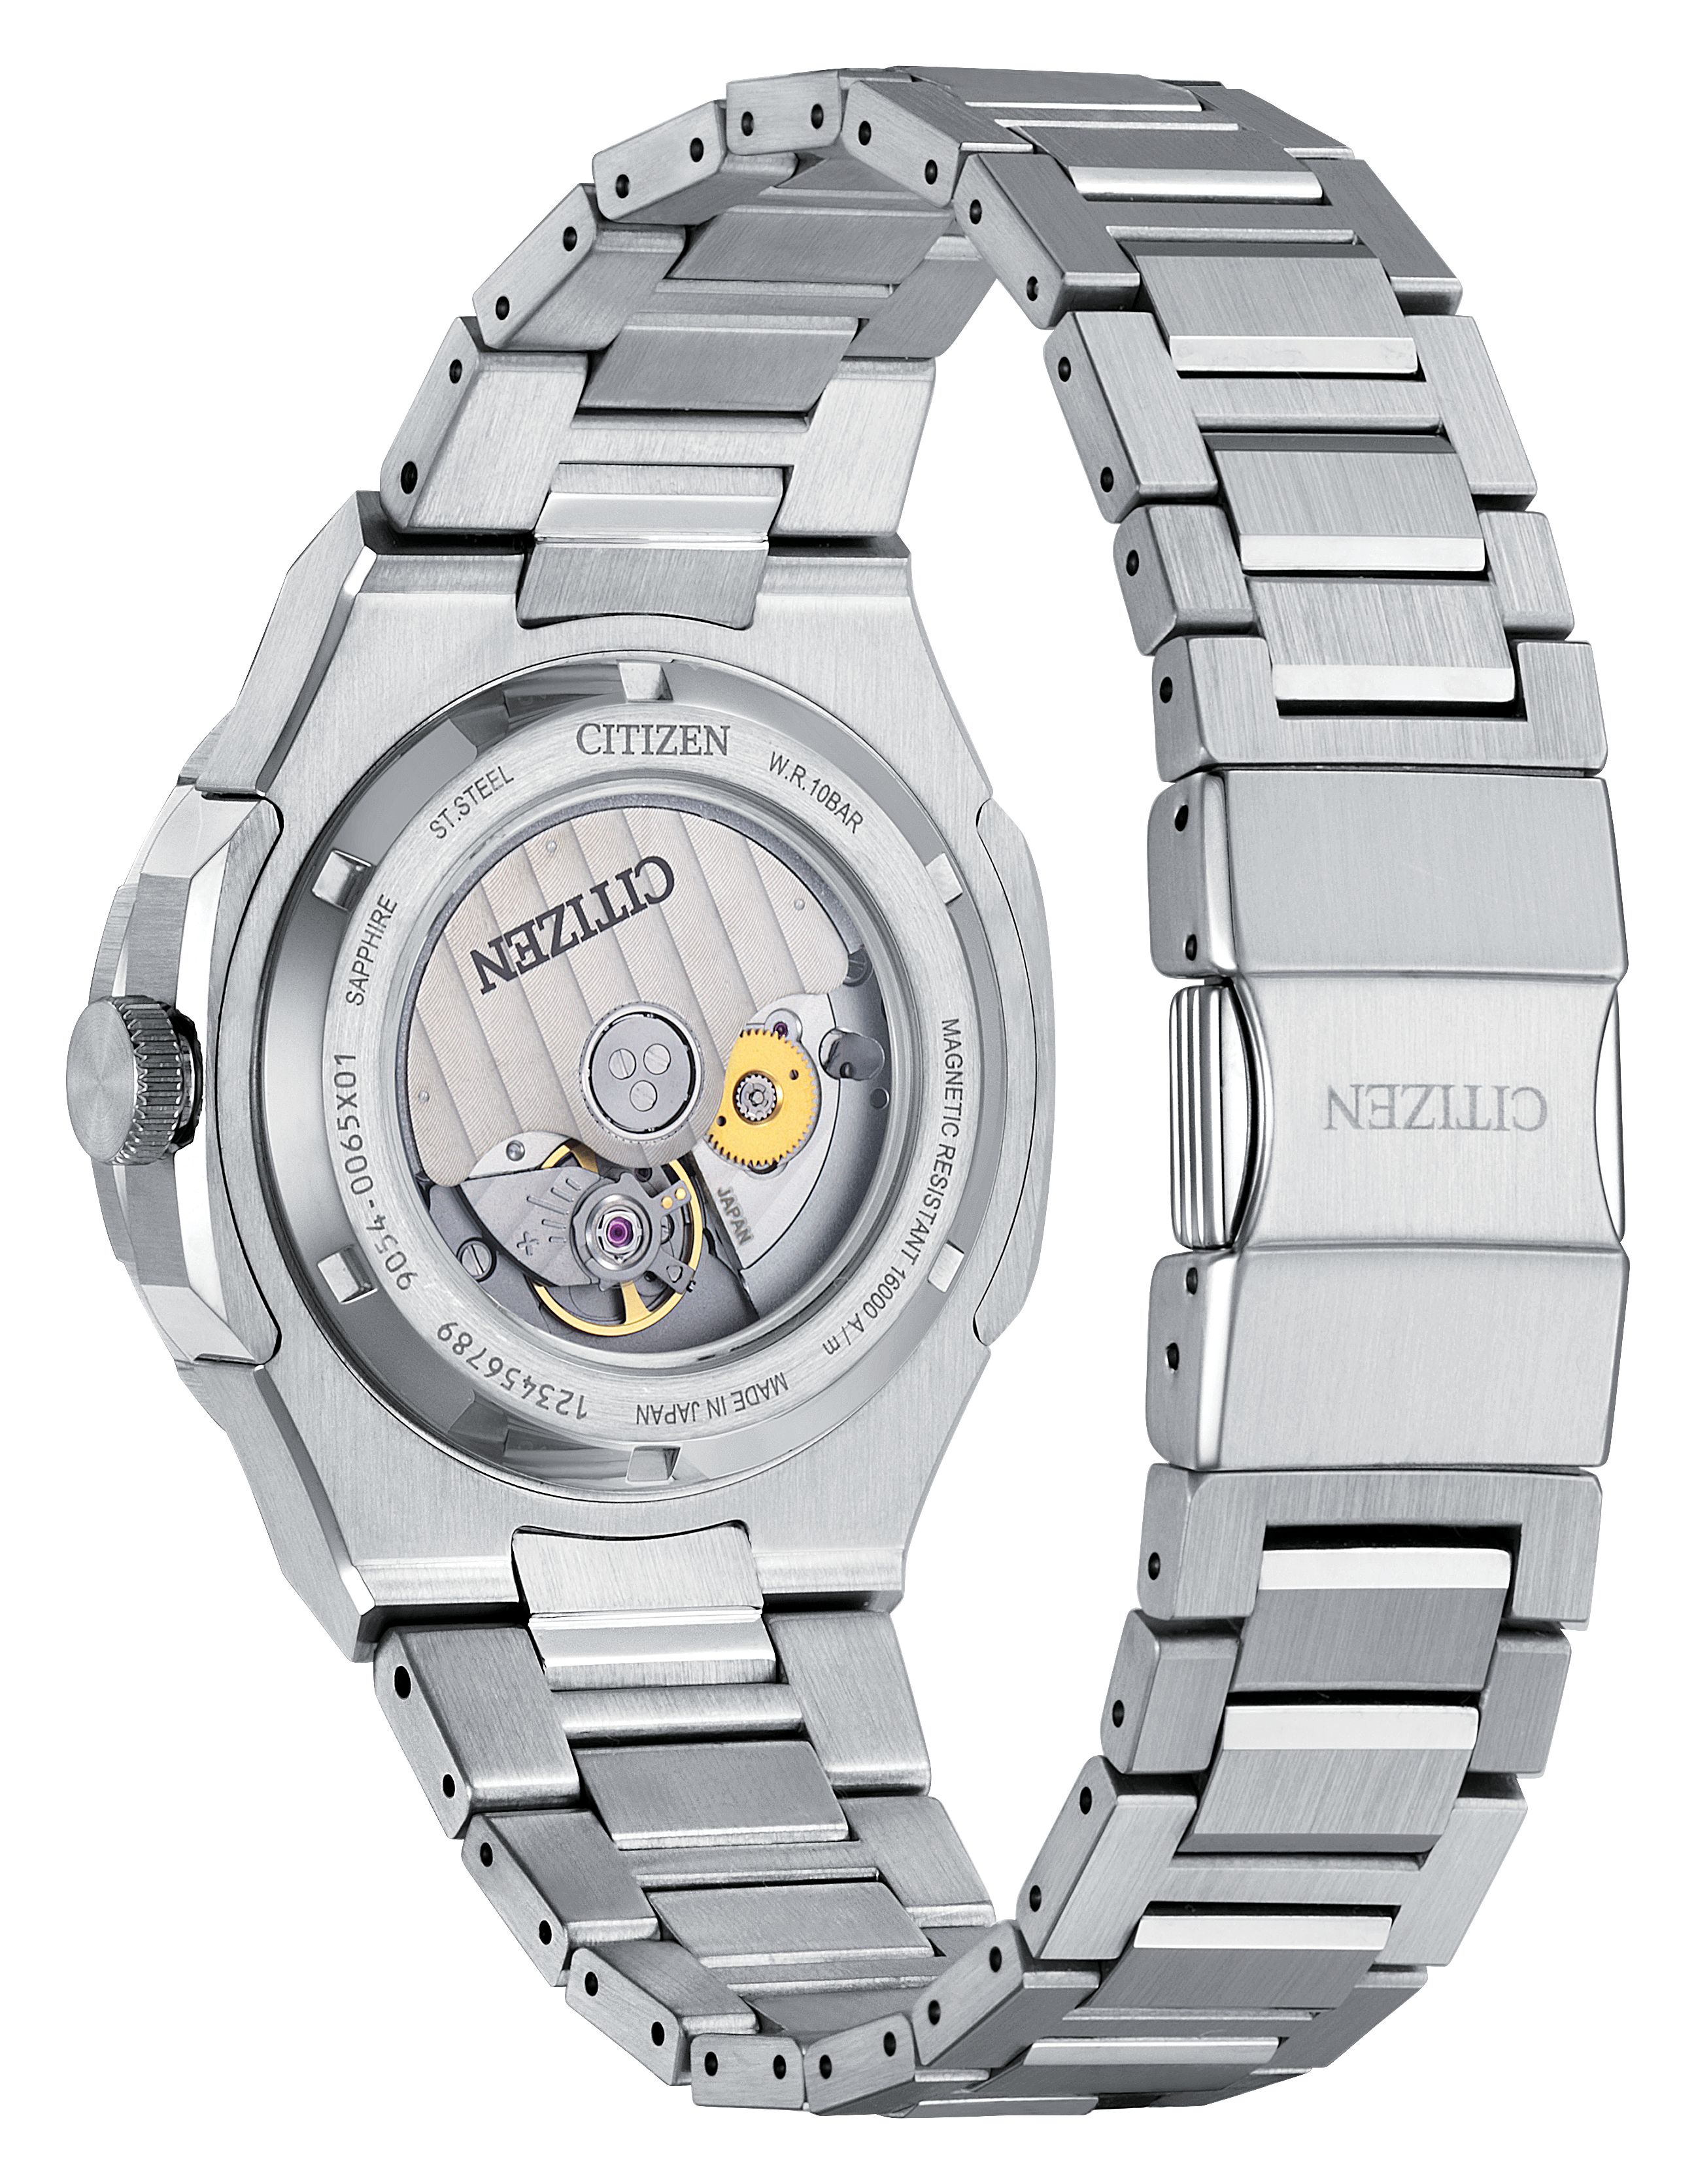 CITIZEN Series8 880 GMT Men's Watch NB6031-56E - Saltzman's Watches